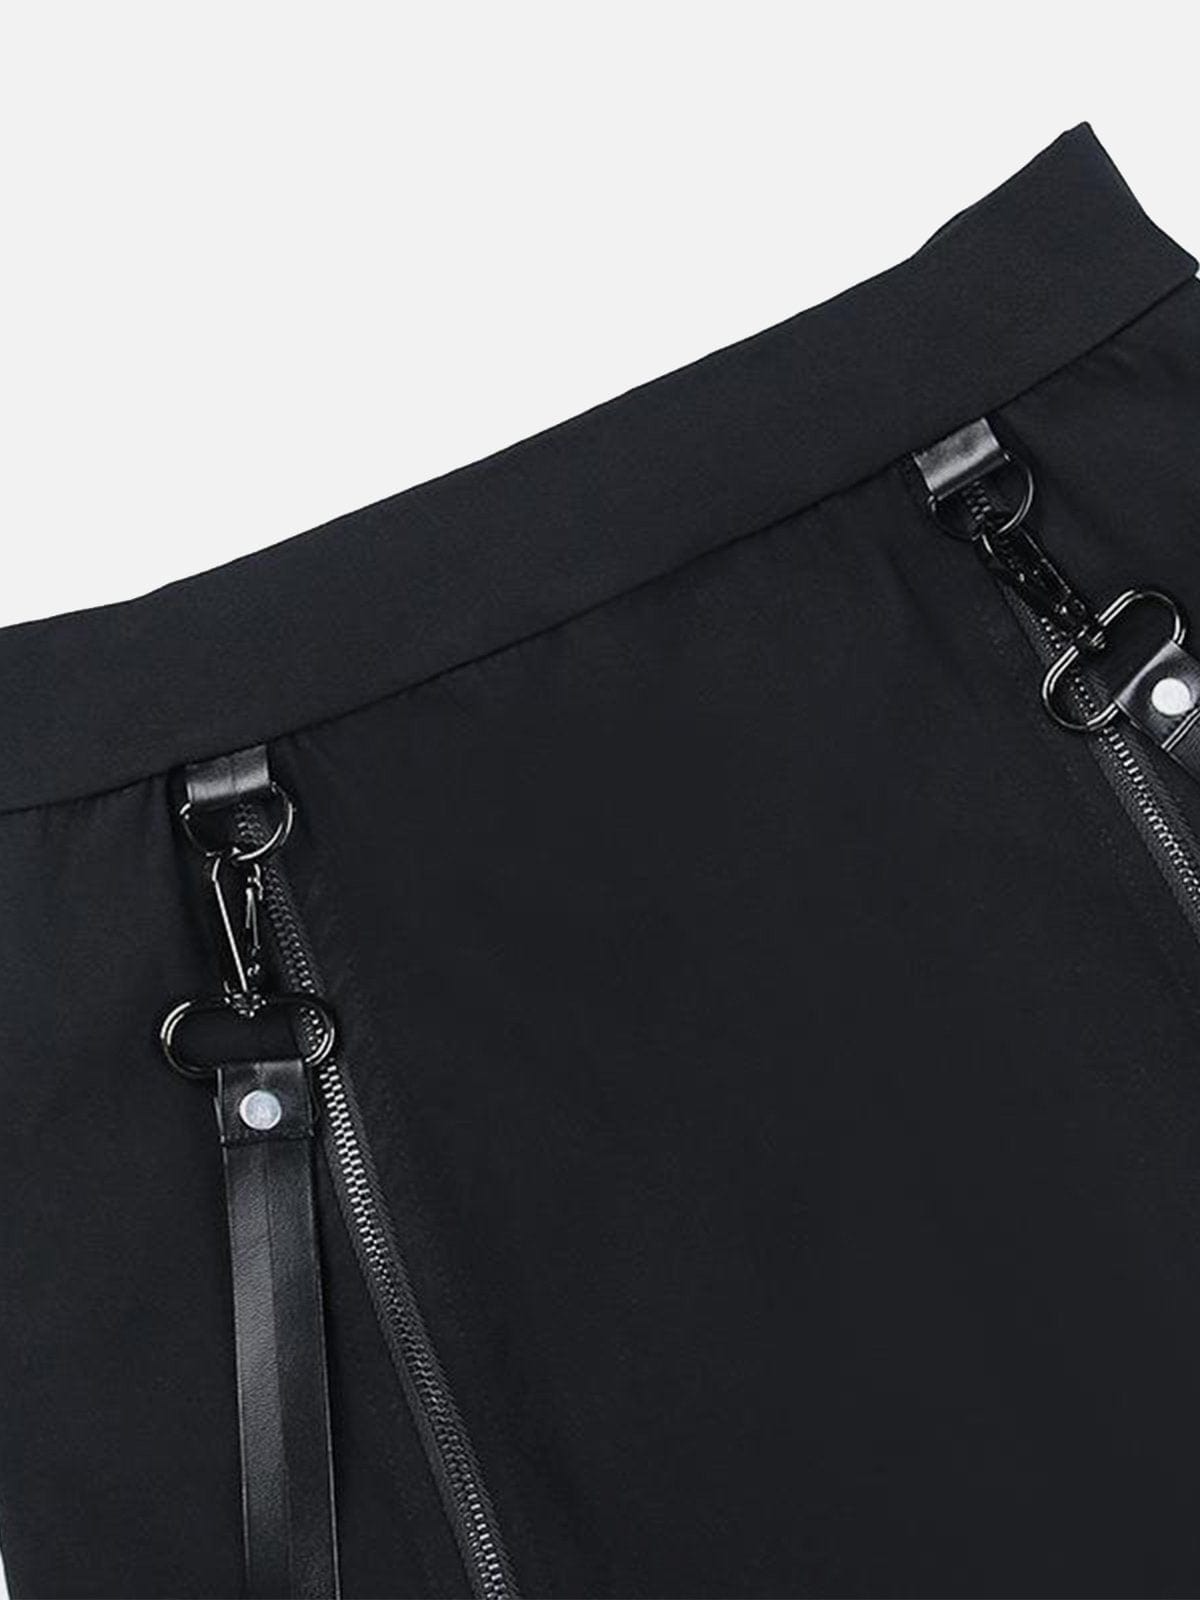 NEV Double Zipper Hip Slit Skirt